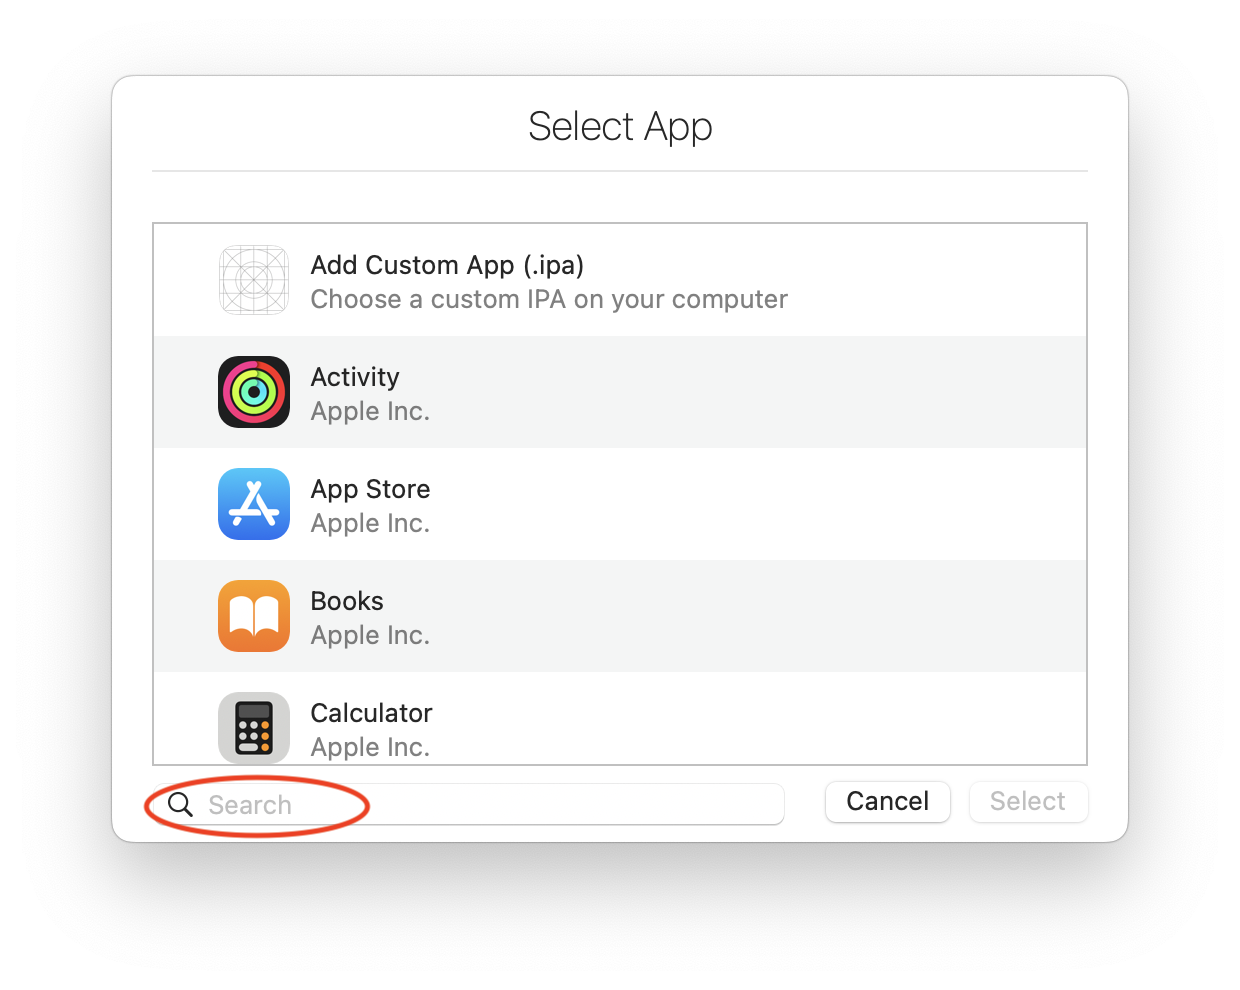 Select an App